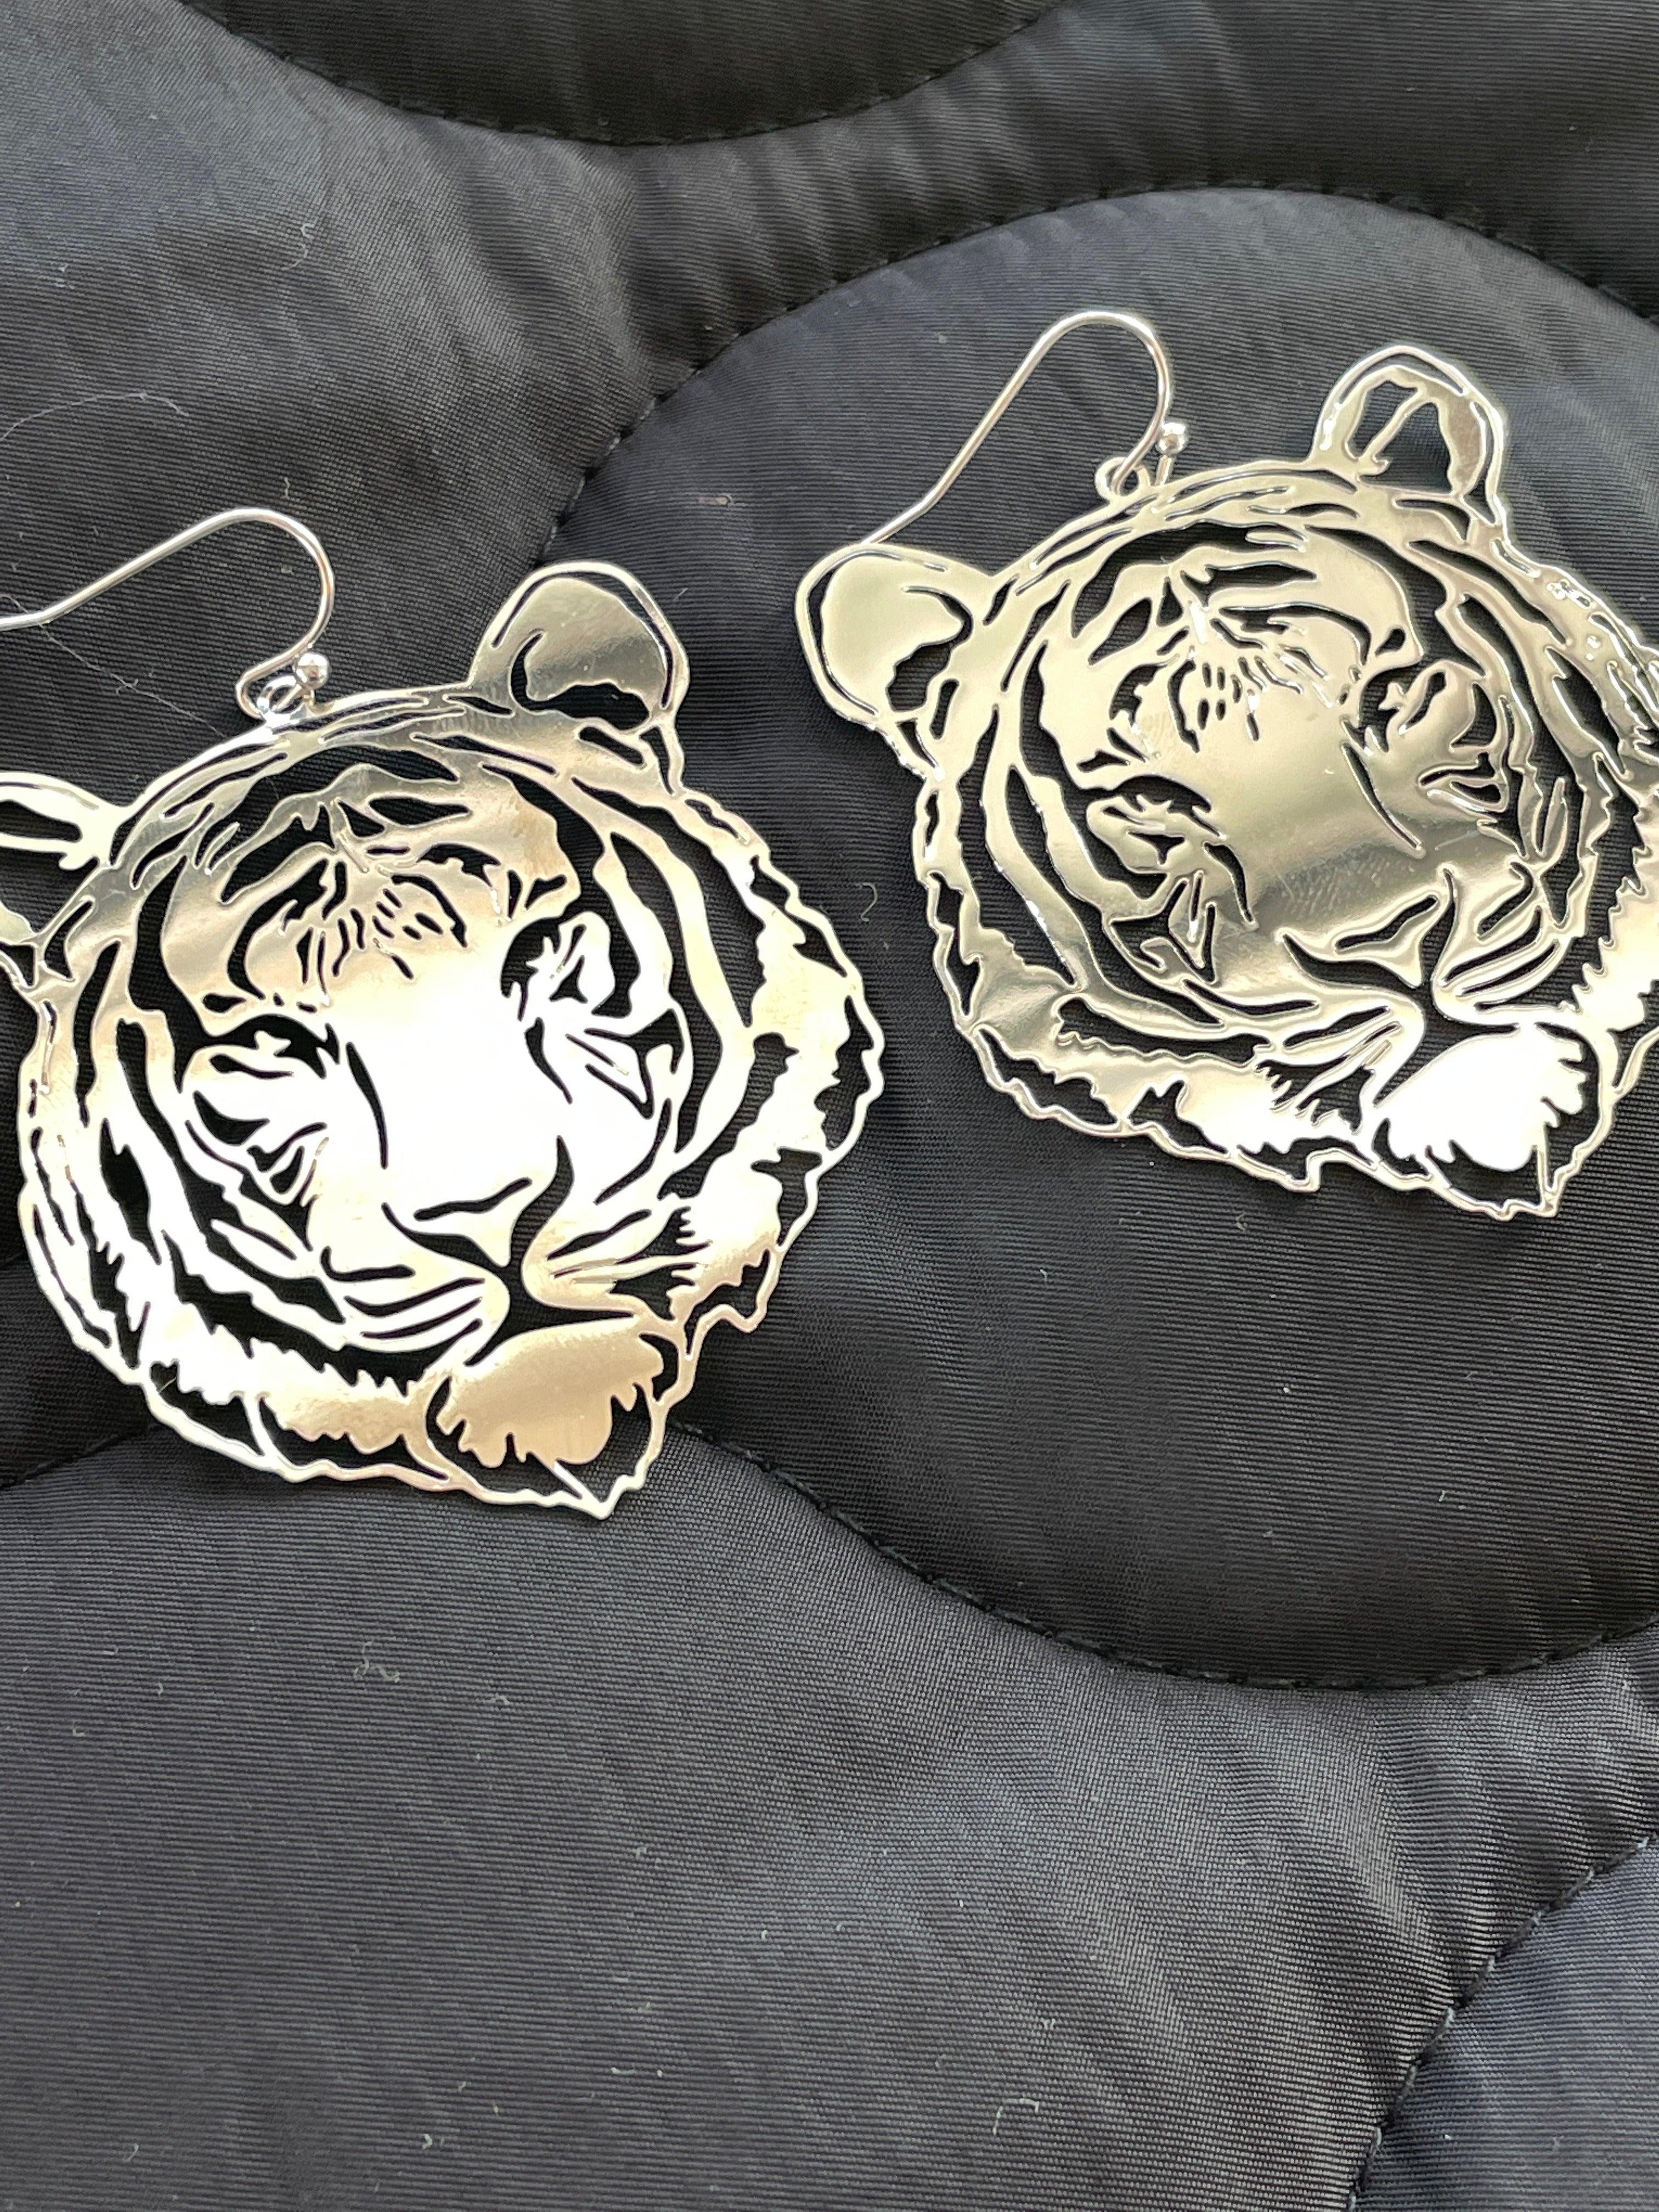 Go Get 'Em Tiger Earrings - Vintage Soul